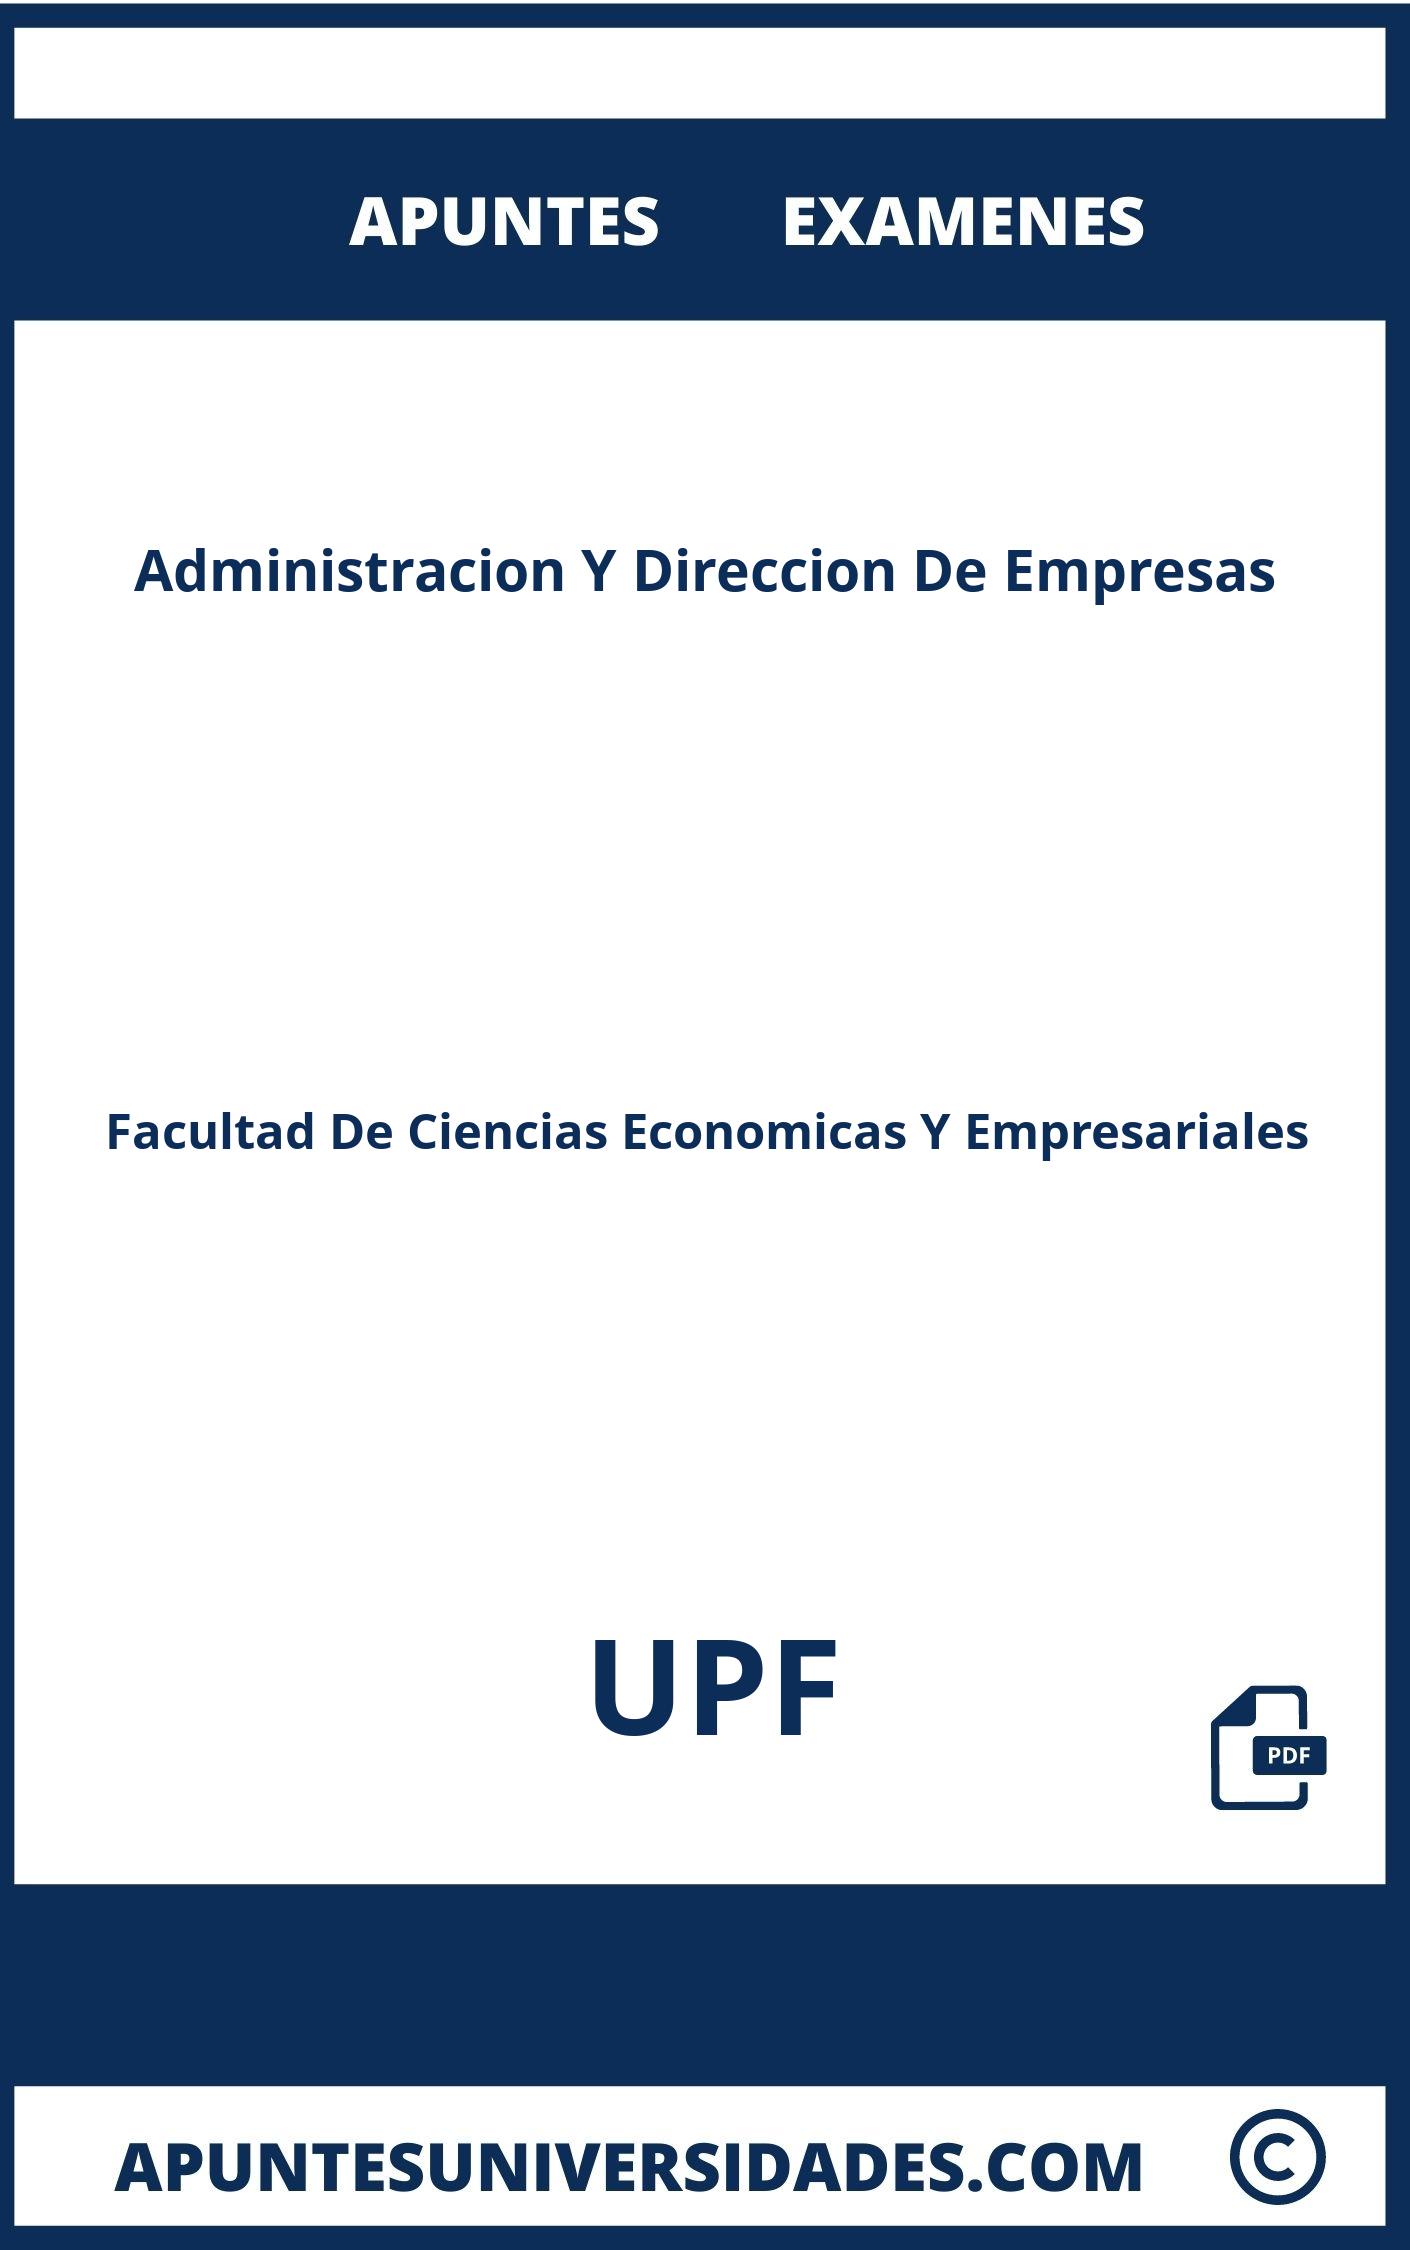 Apuntes Examenes Administracion Y Direccion De Empresas UPF